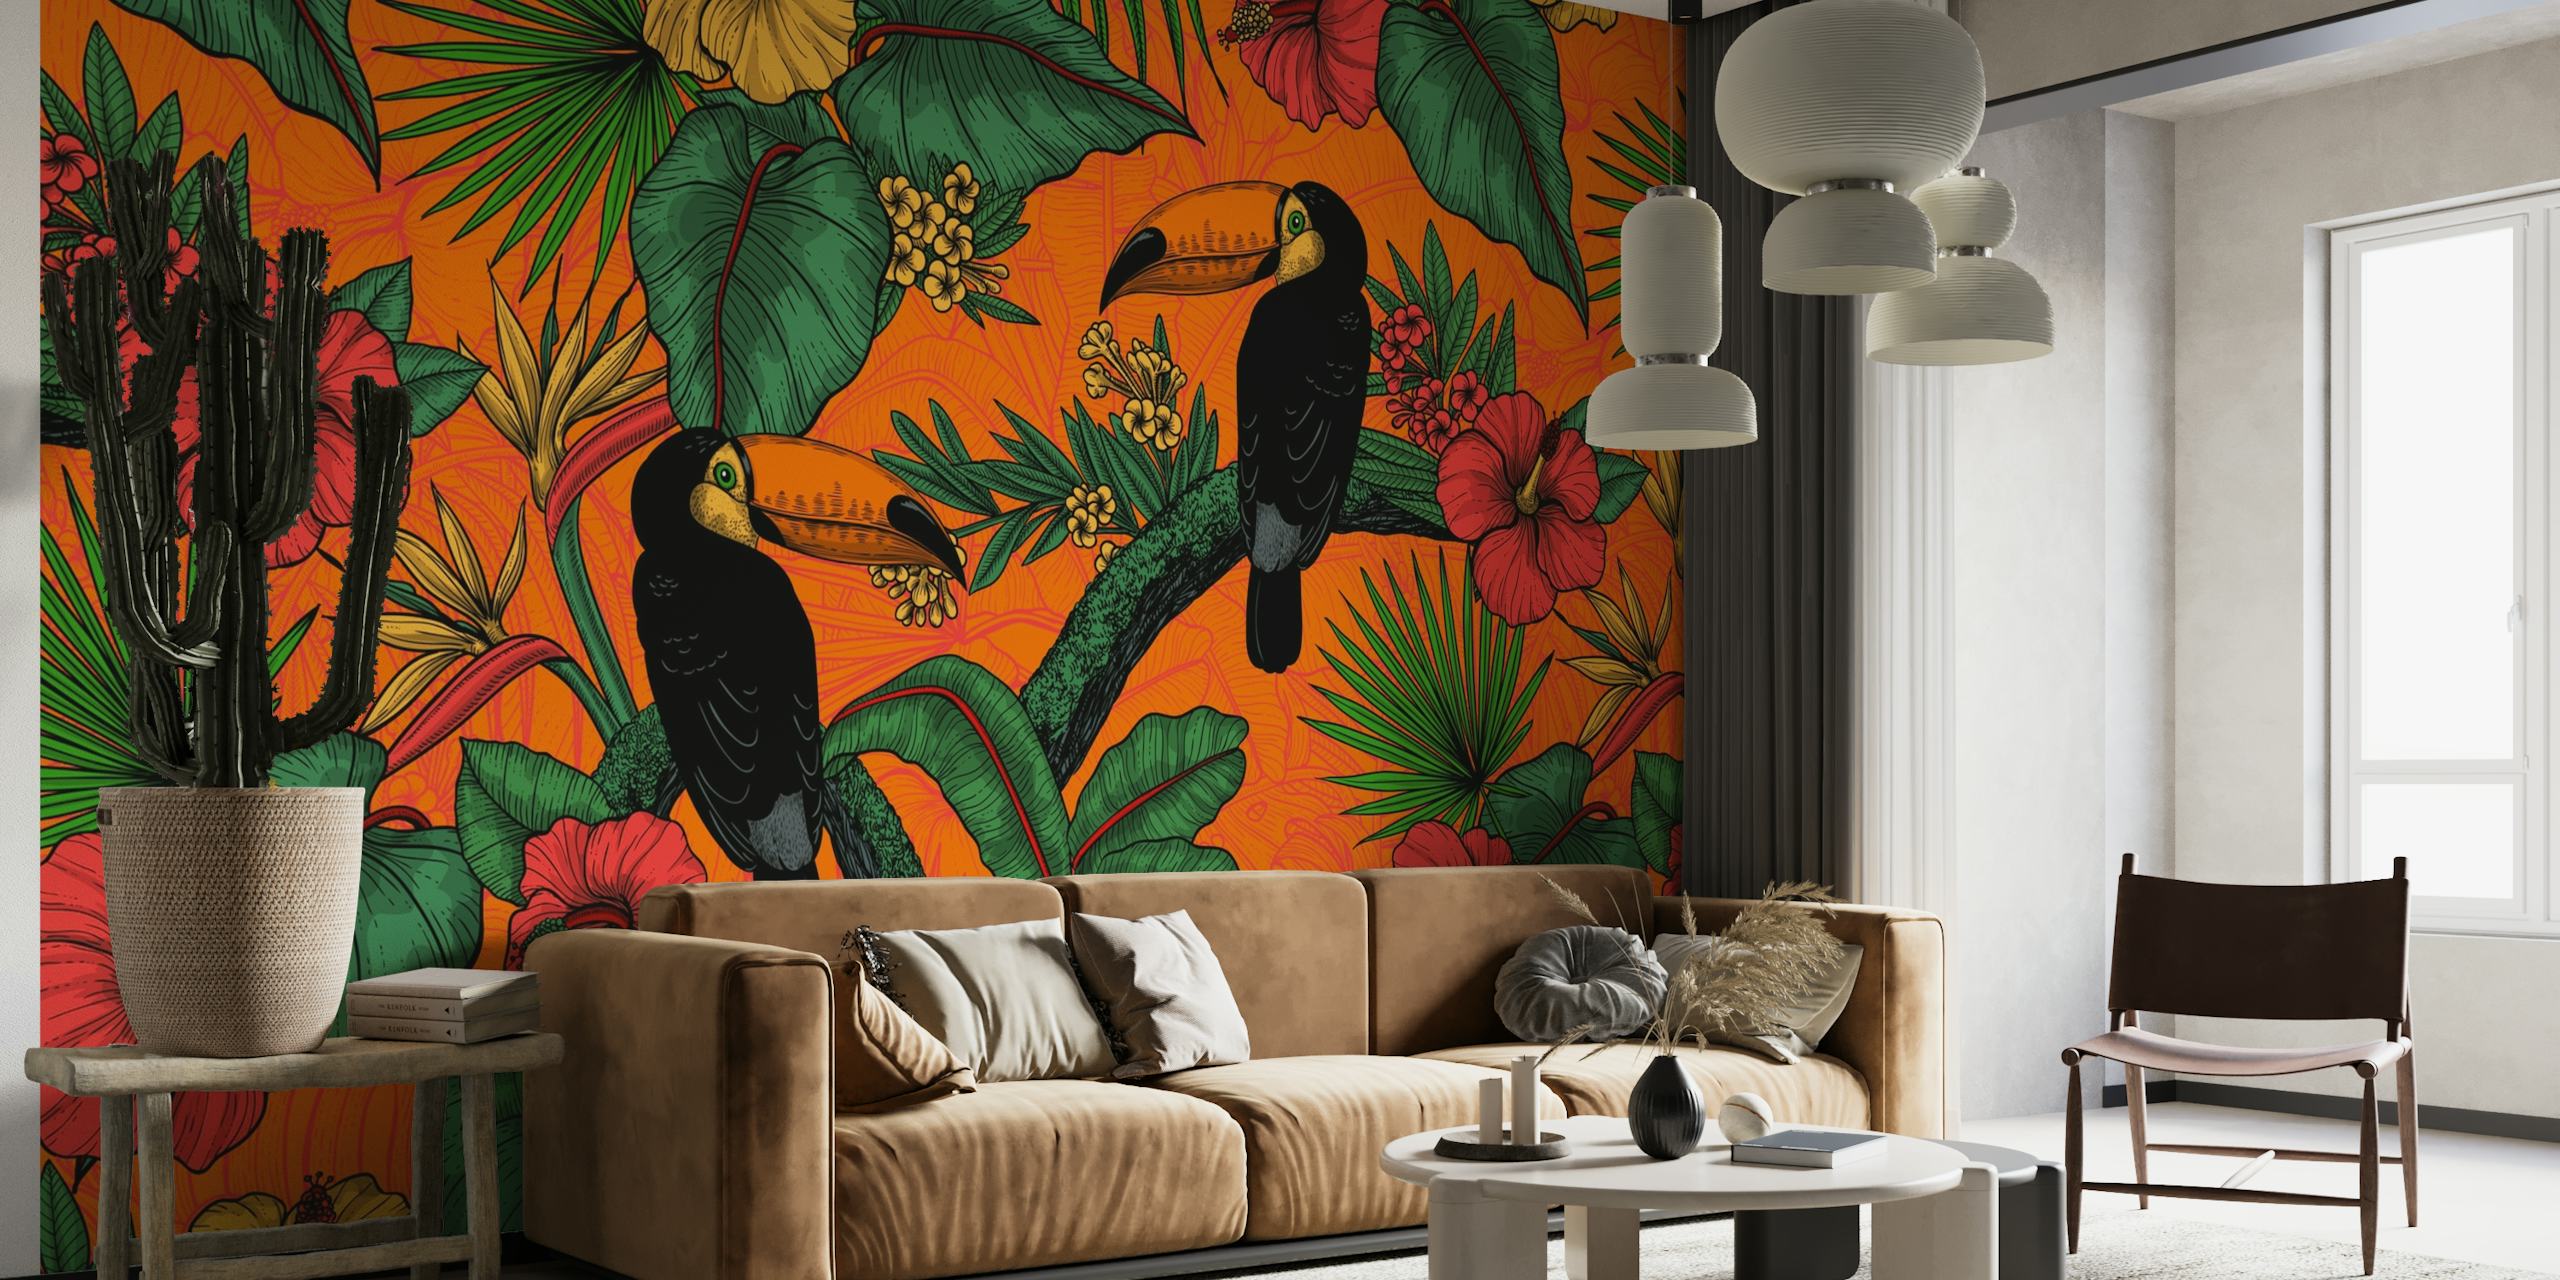 Tropische toekan muurschildering met kleurrijke bloemen en weelderige groene bladeren op een oranje achtergrond